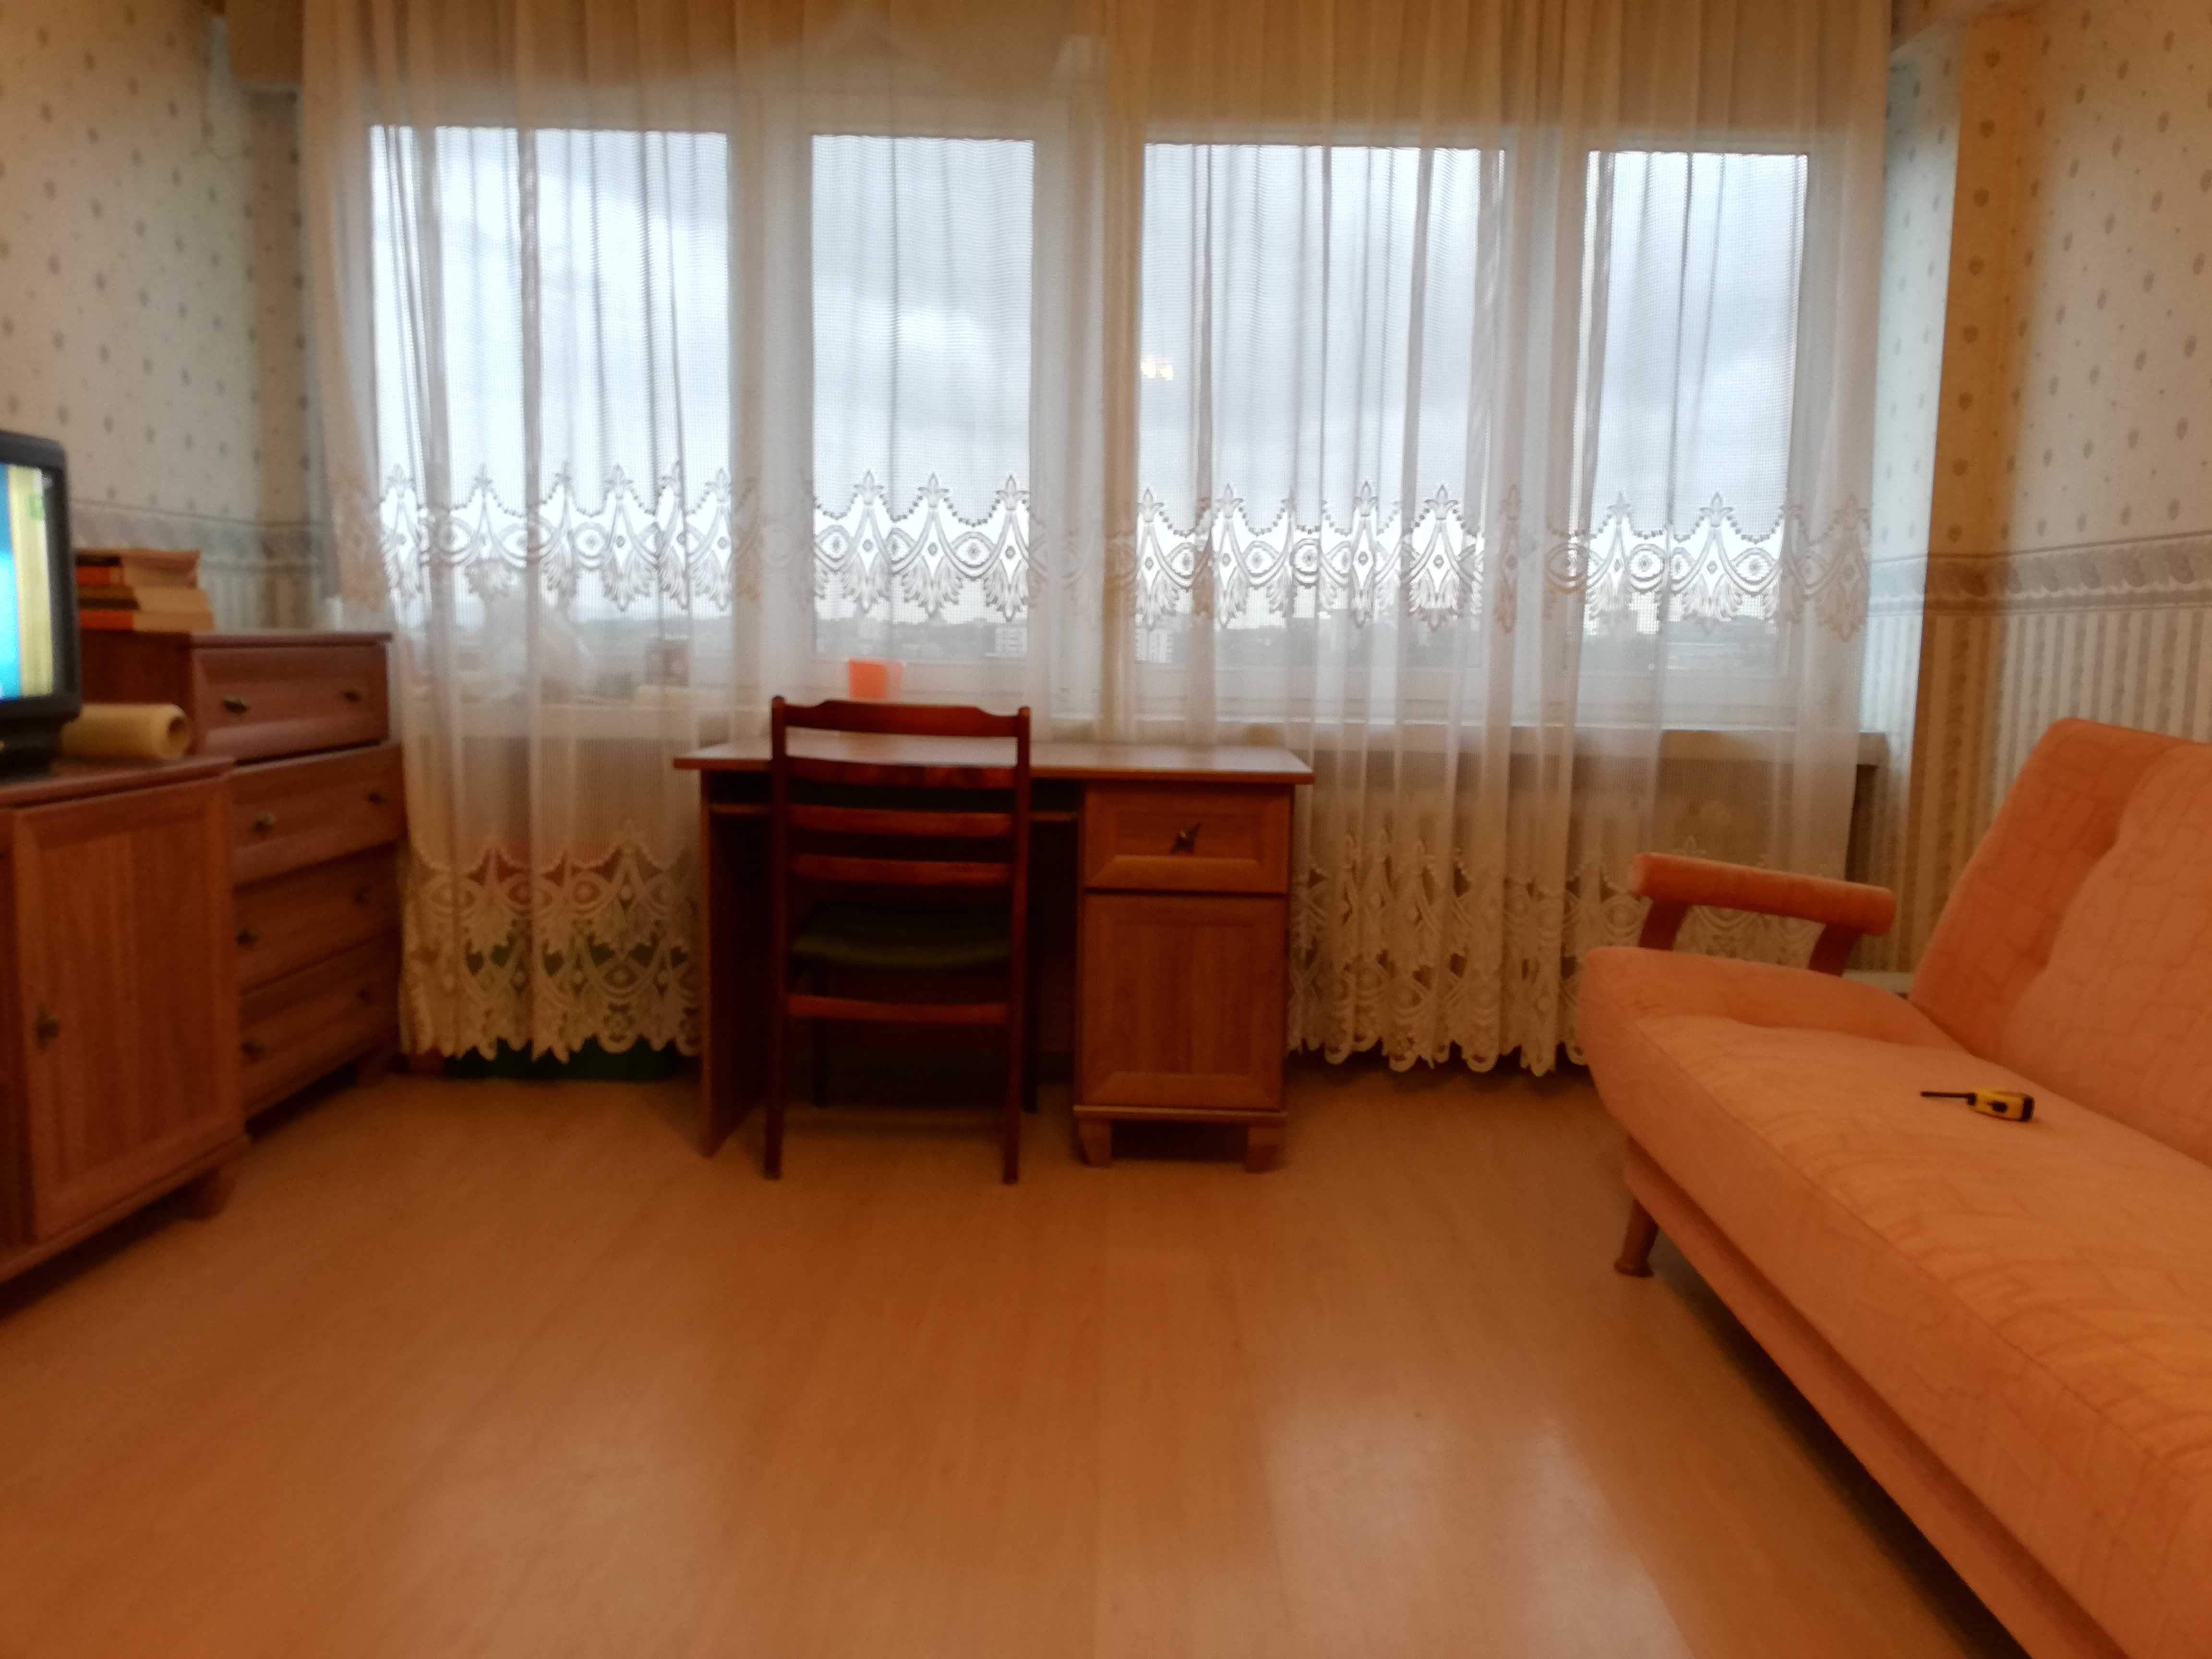 Mieszkanie za darmo dla rodziny ukraińskiej do 4 osób